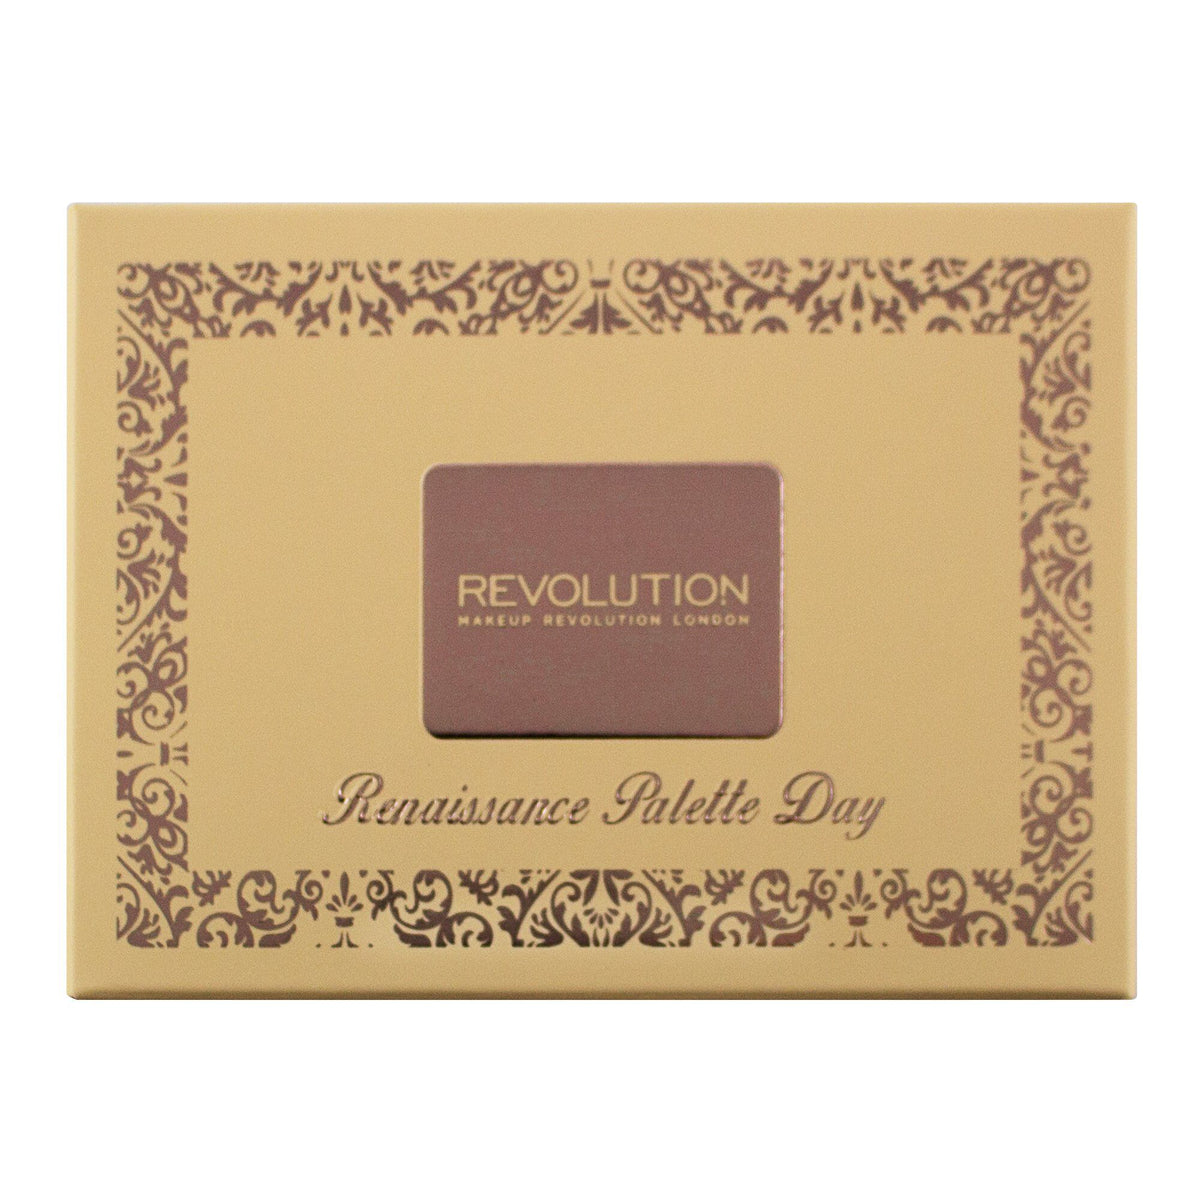 Makeup Revolution Renaissance Palette Day